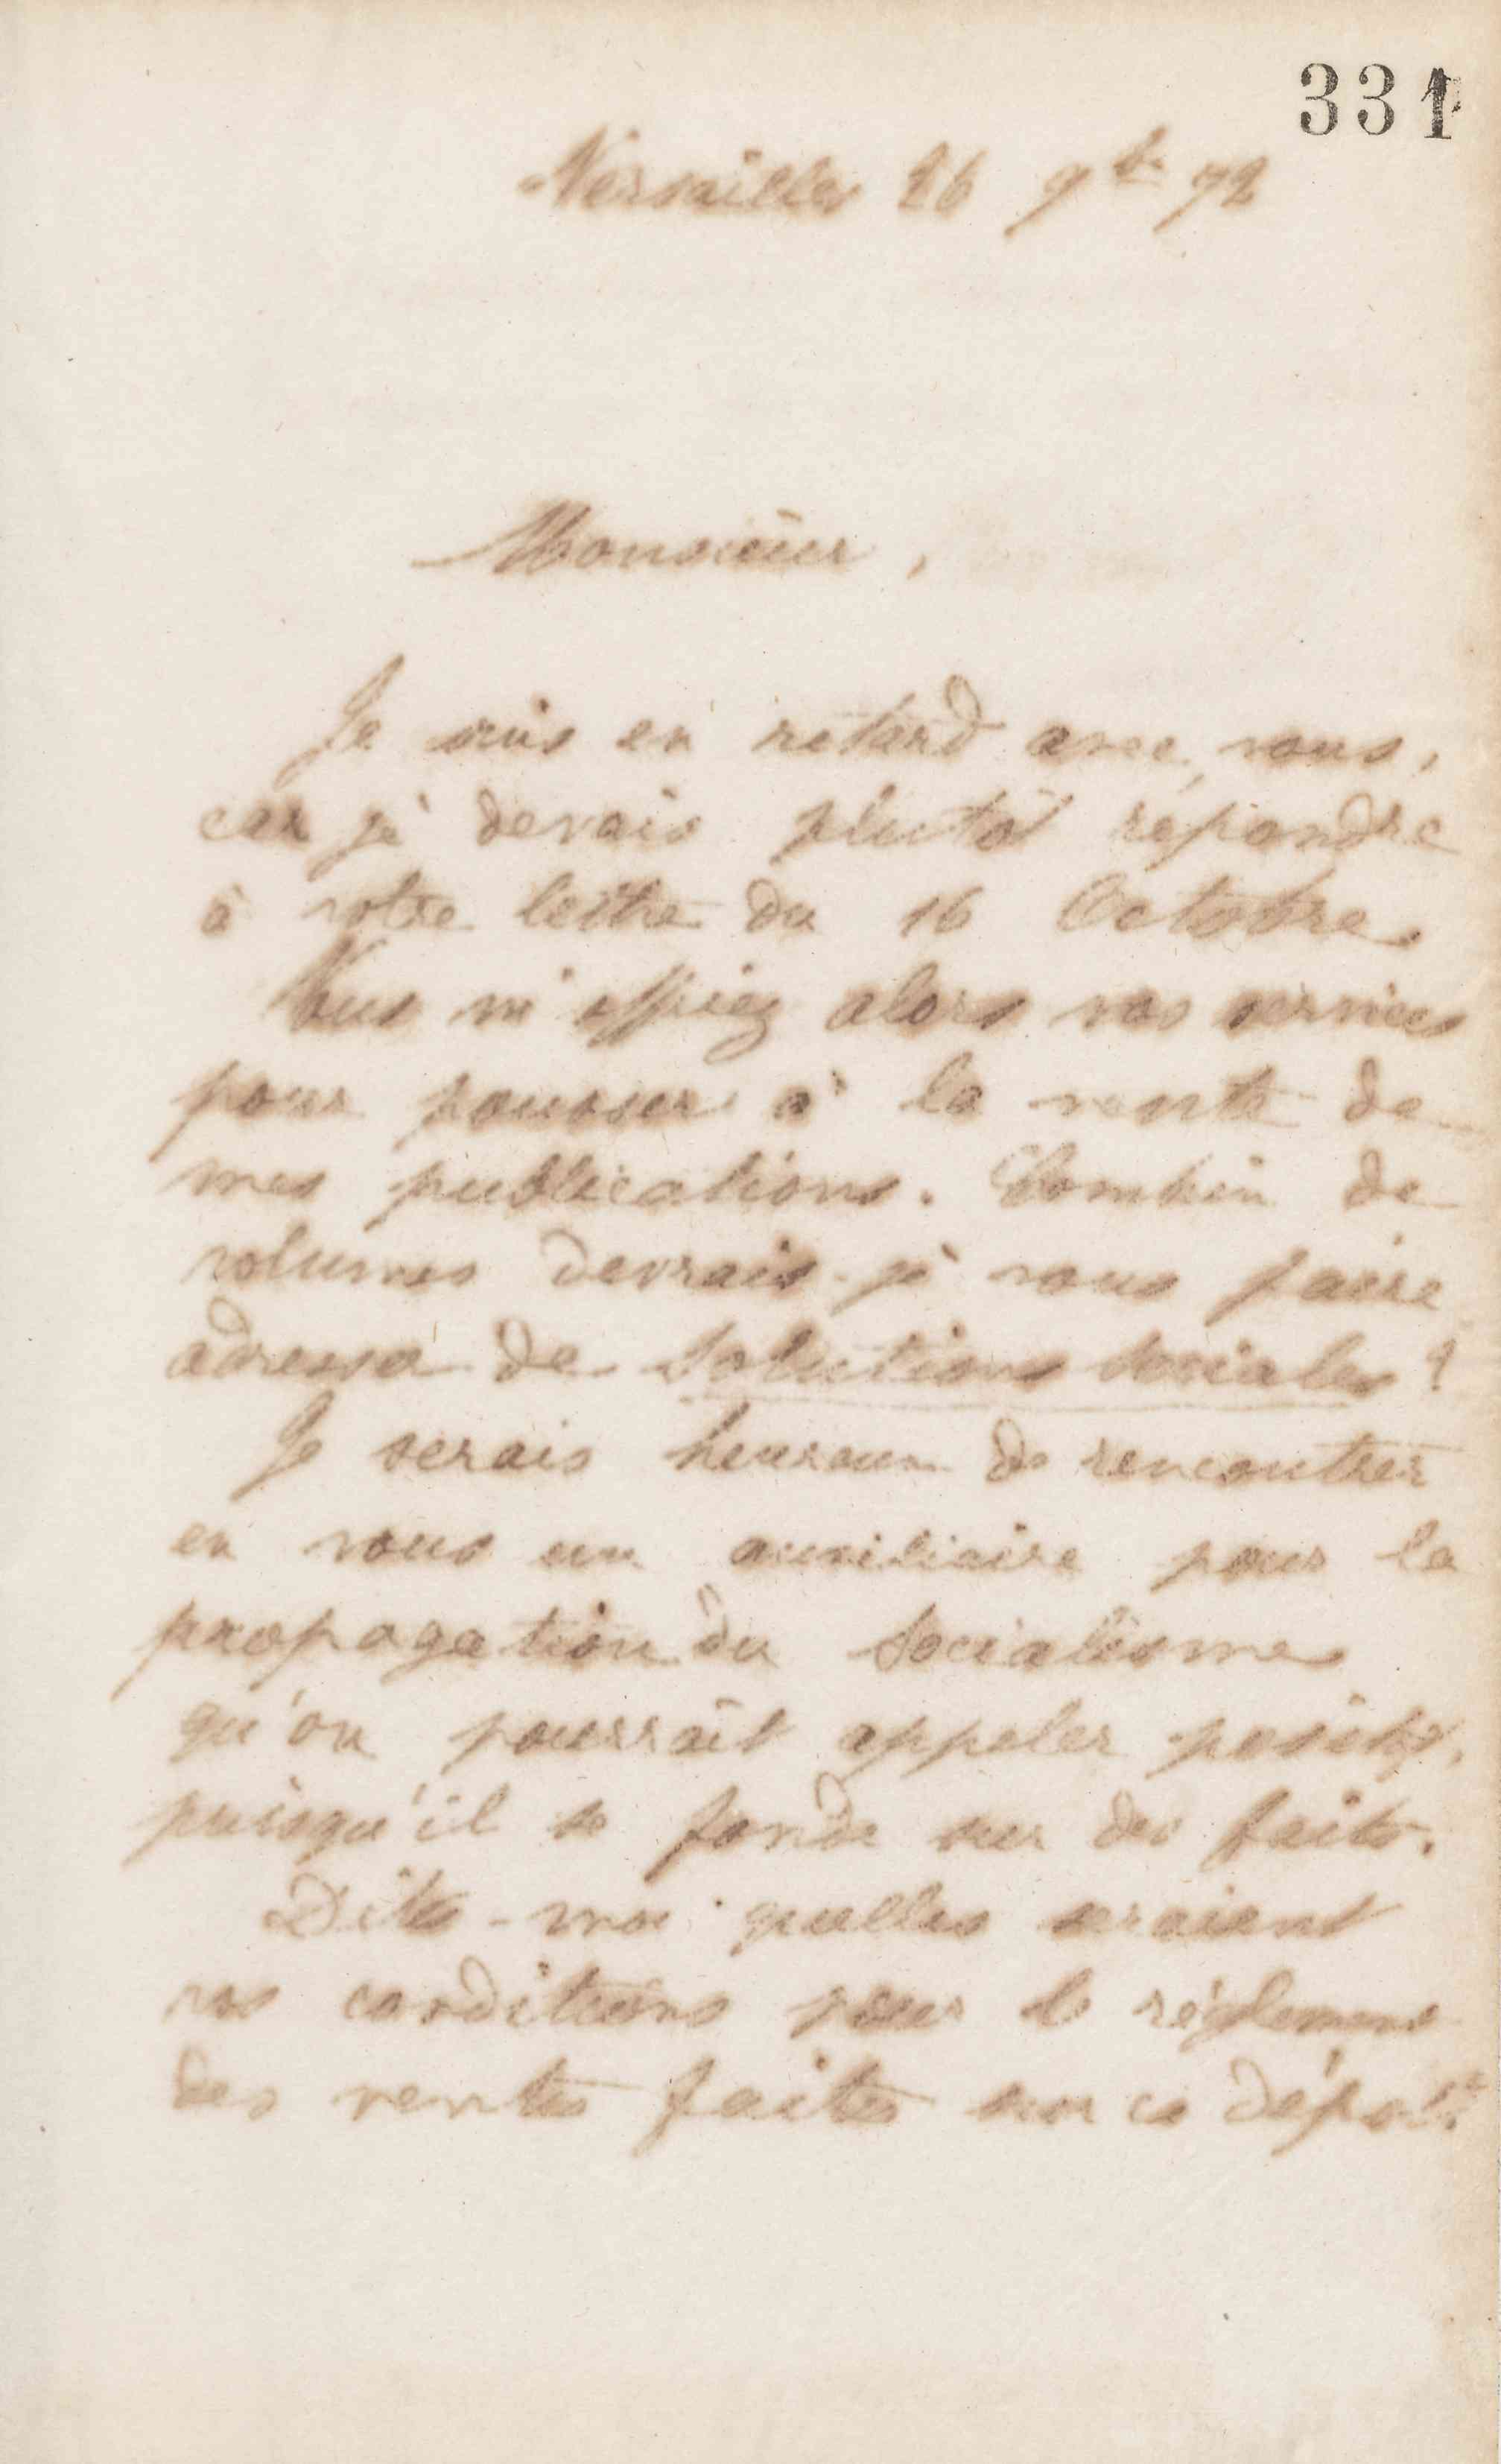 Jean-Baptiste André Godin à Ernest Leroux, 26 novembre 1872